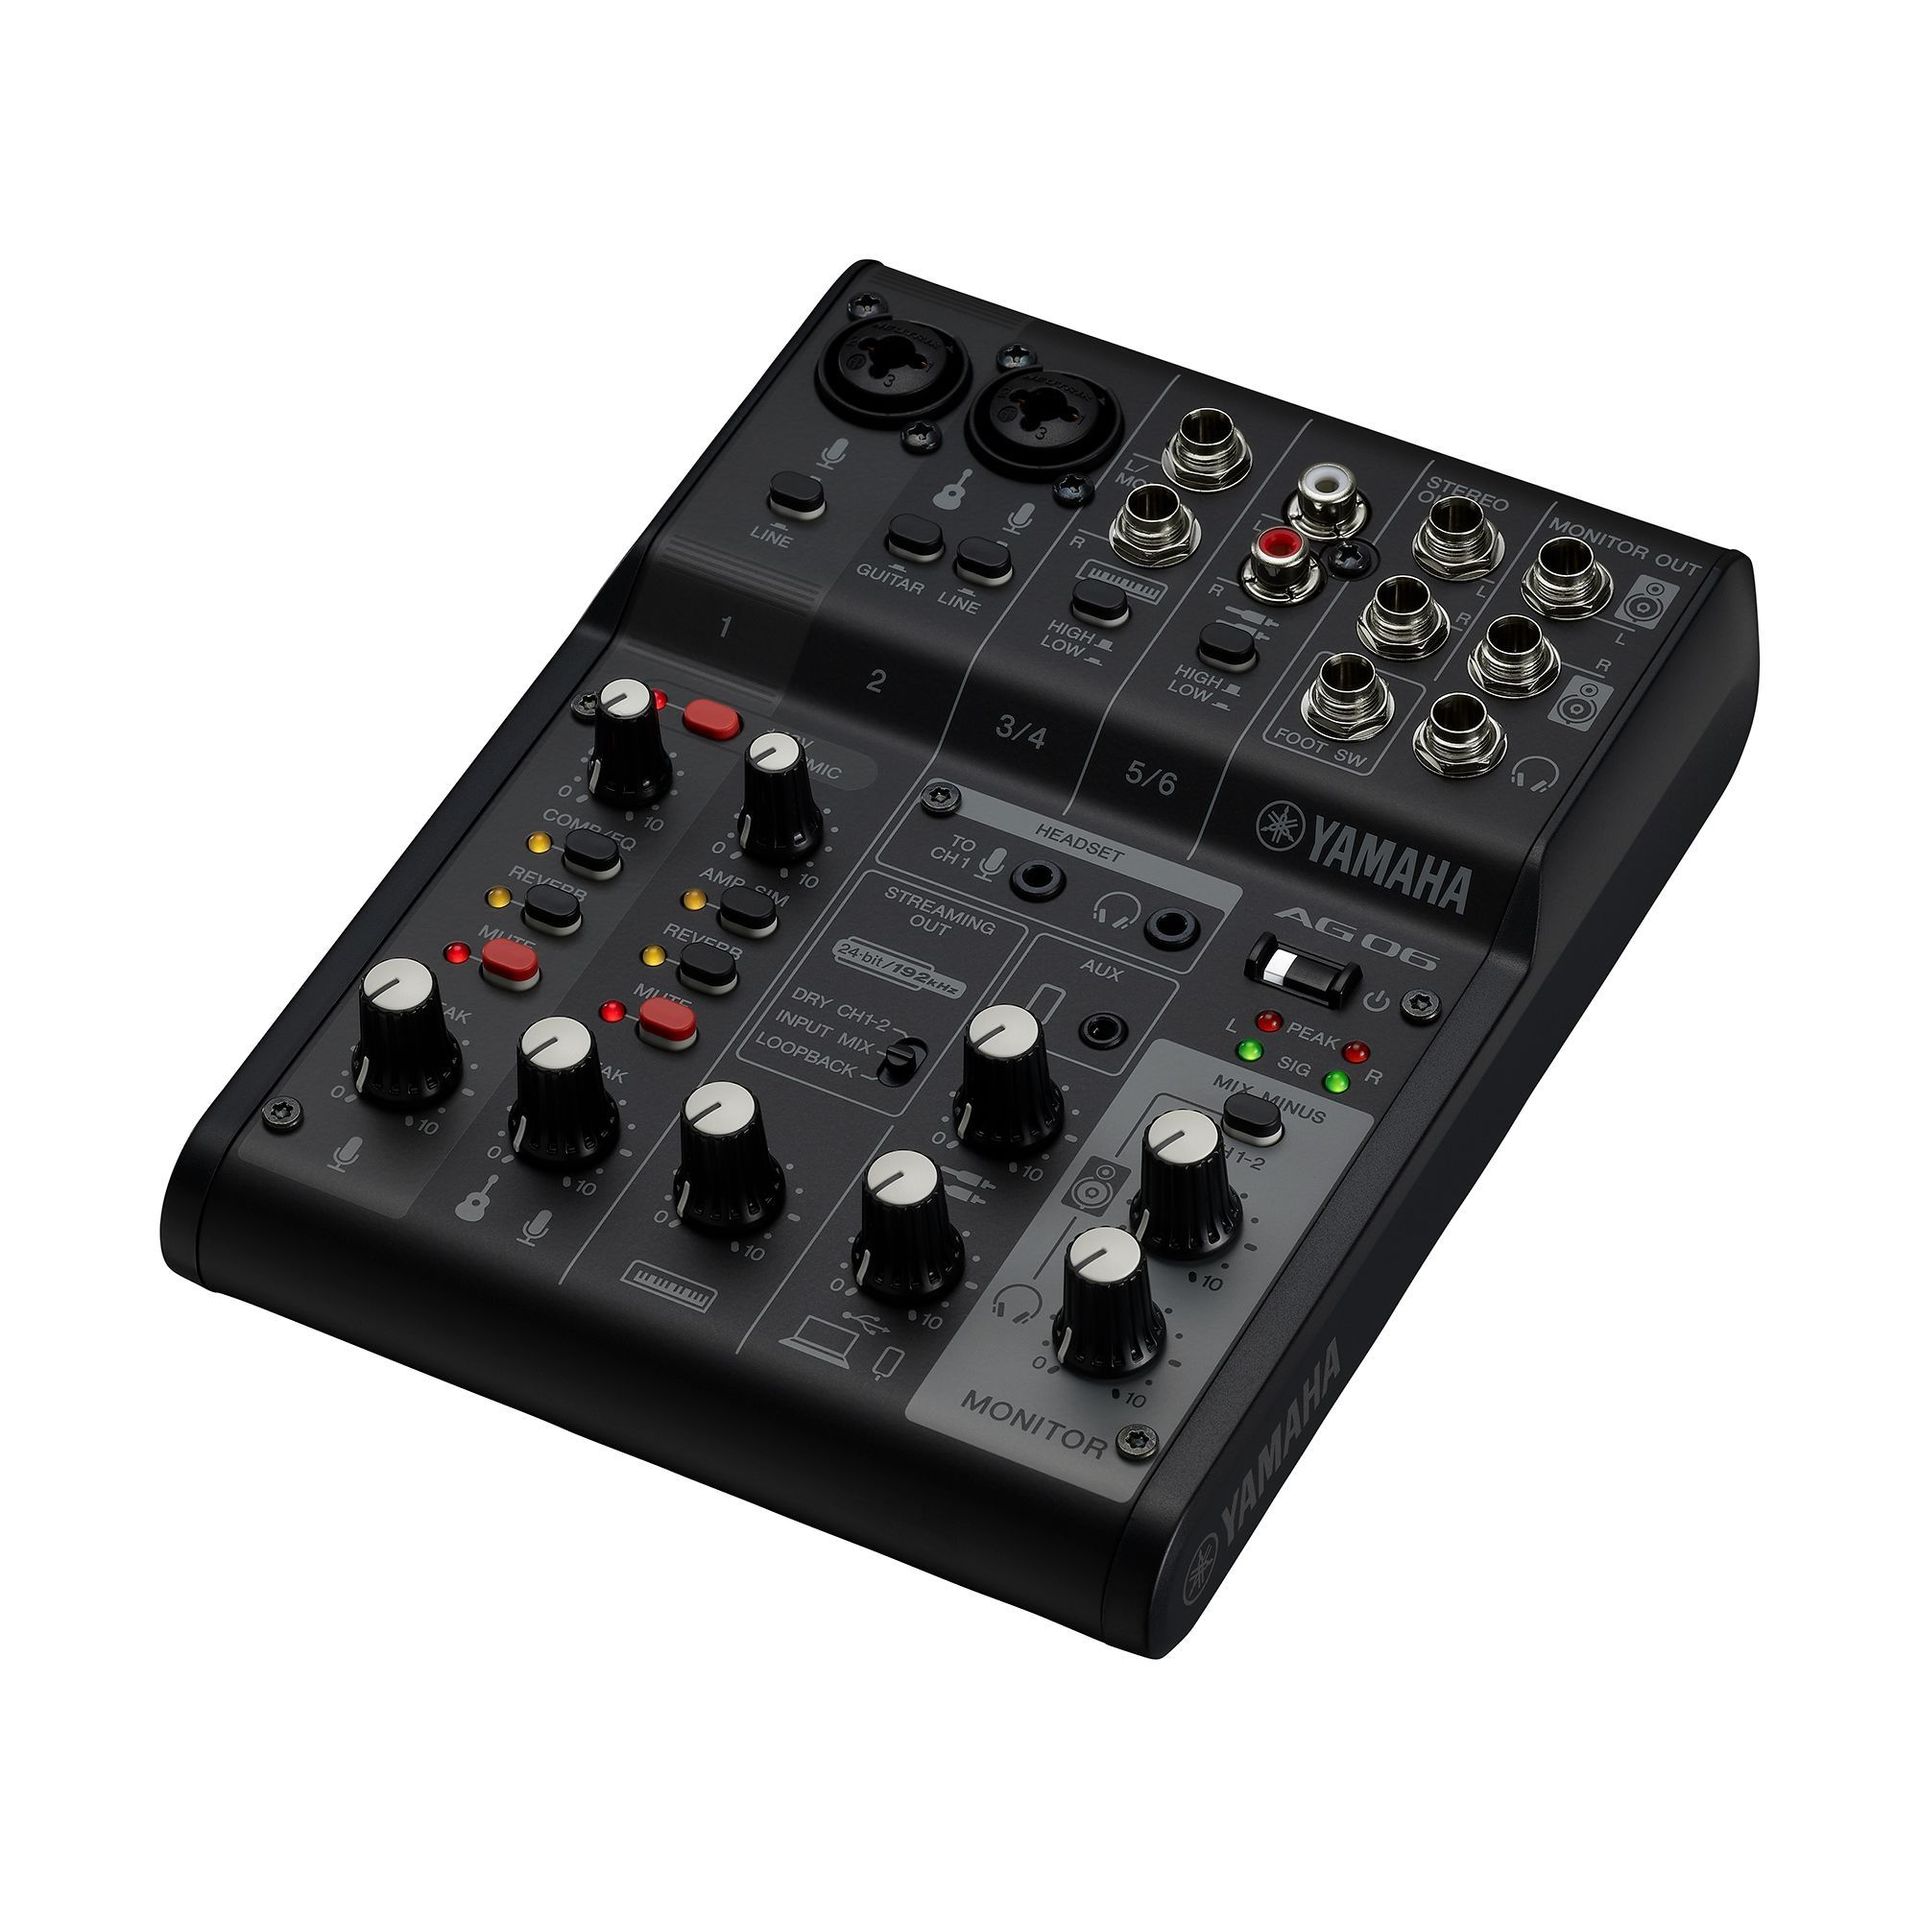 Yamaha AG06 MK2 BK Mixer mit internem USB 2.0 Audiointerface Farbe: schwarz